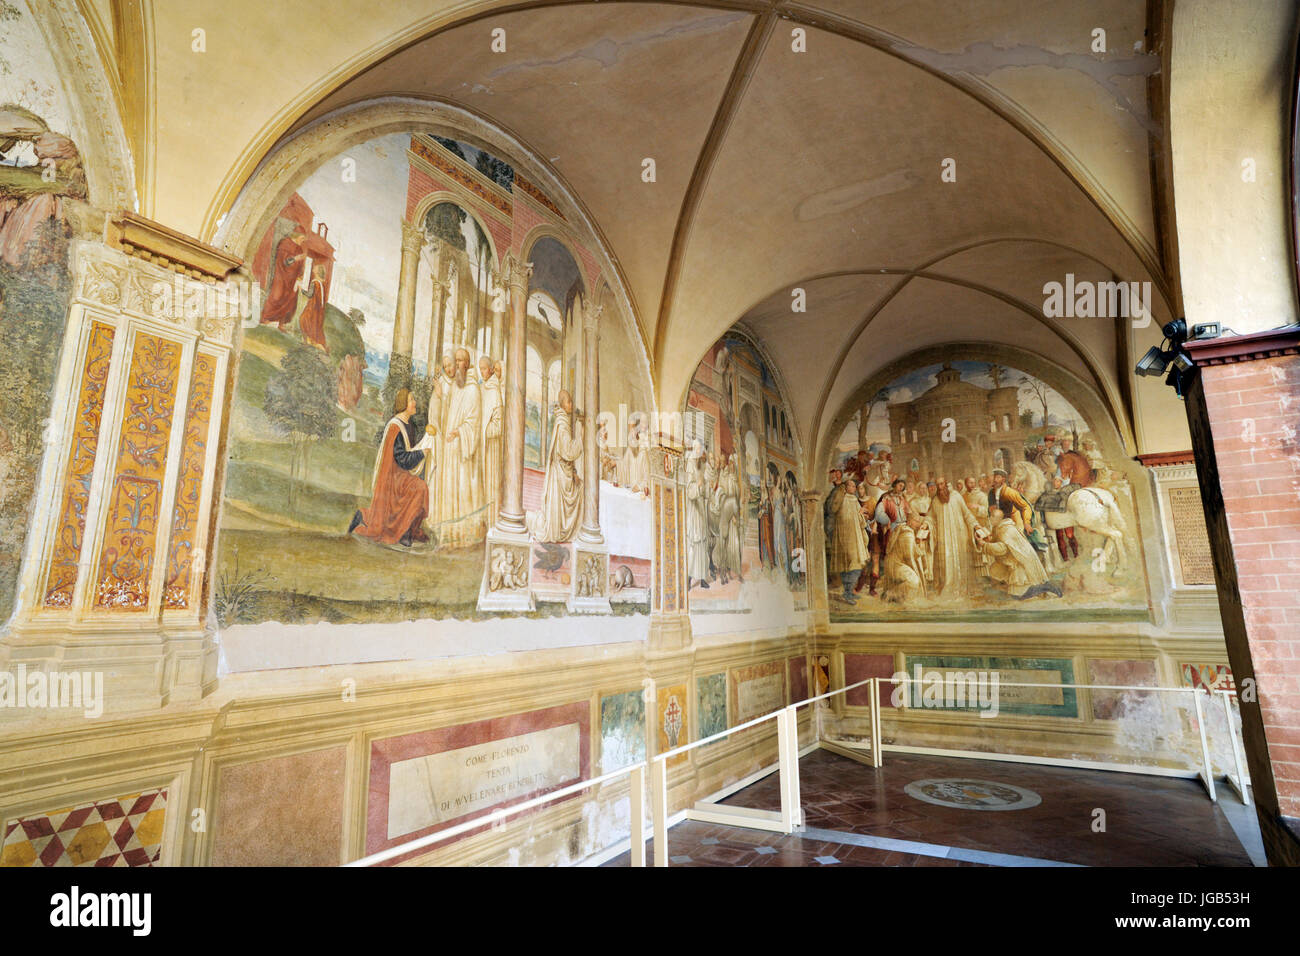 Renaissance frescos, st Benedict life, paintings by Il Sodoma and Il Riccio, Chiostro Grande, Abbey of Monte Oliveto Maggiore, Tuscany, Italy Stock Photo